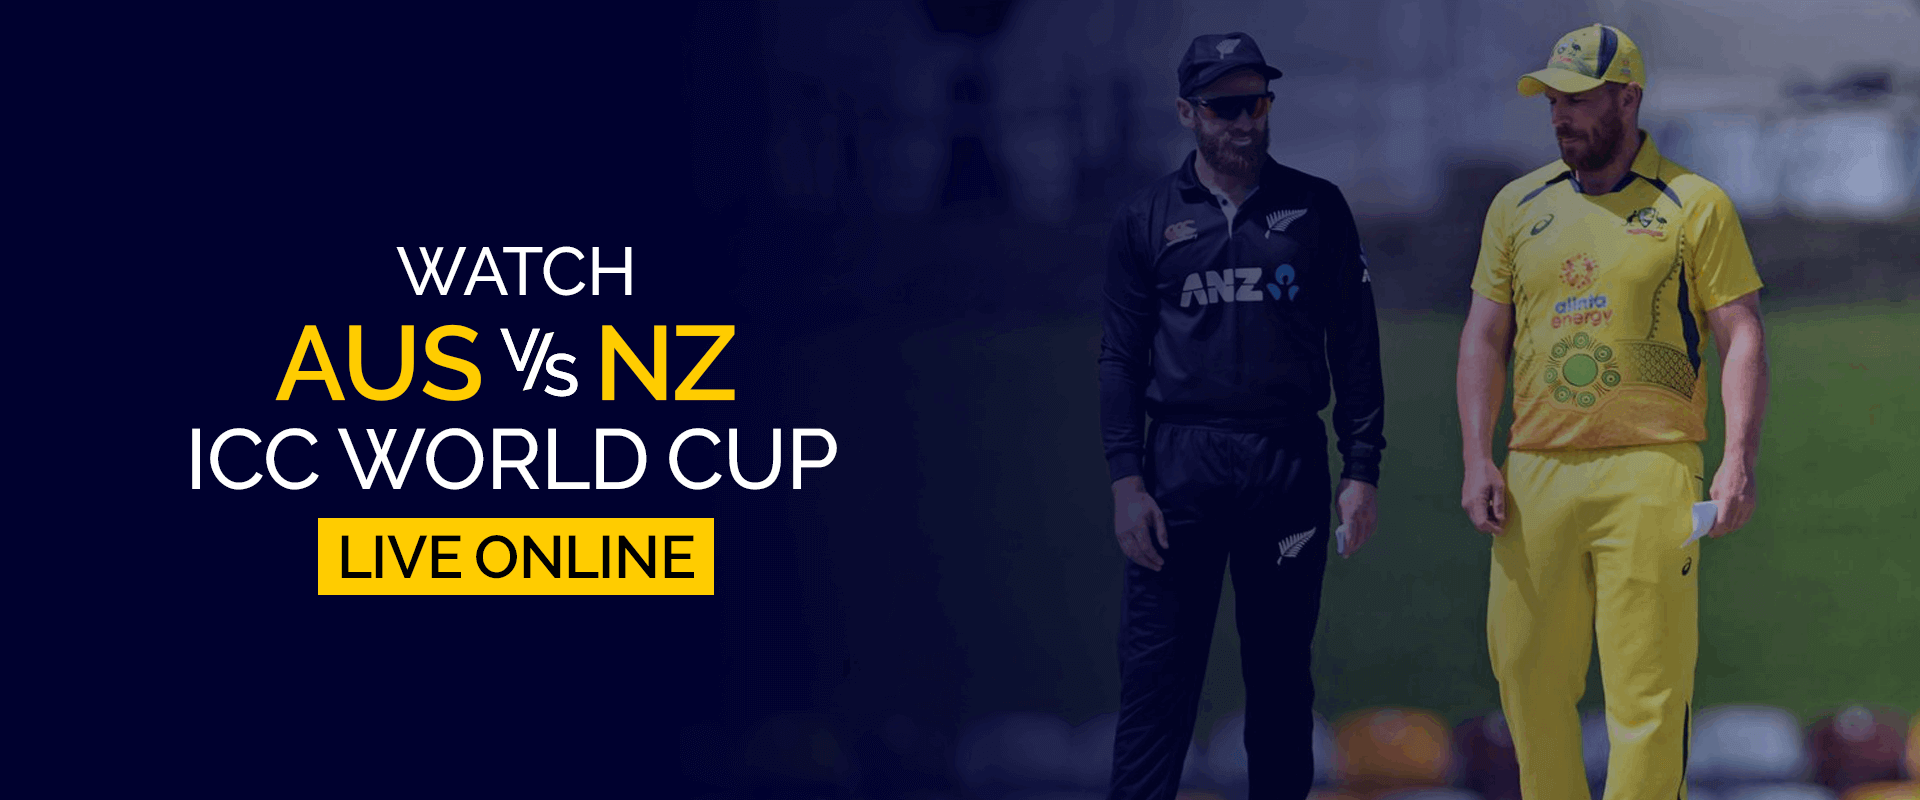 Смотрите матч чемпионата мира ICC между Австралией и Новой Зеландией в прямом эфире онлайн